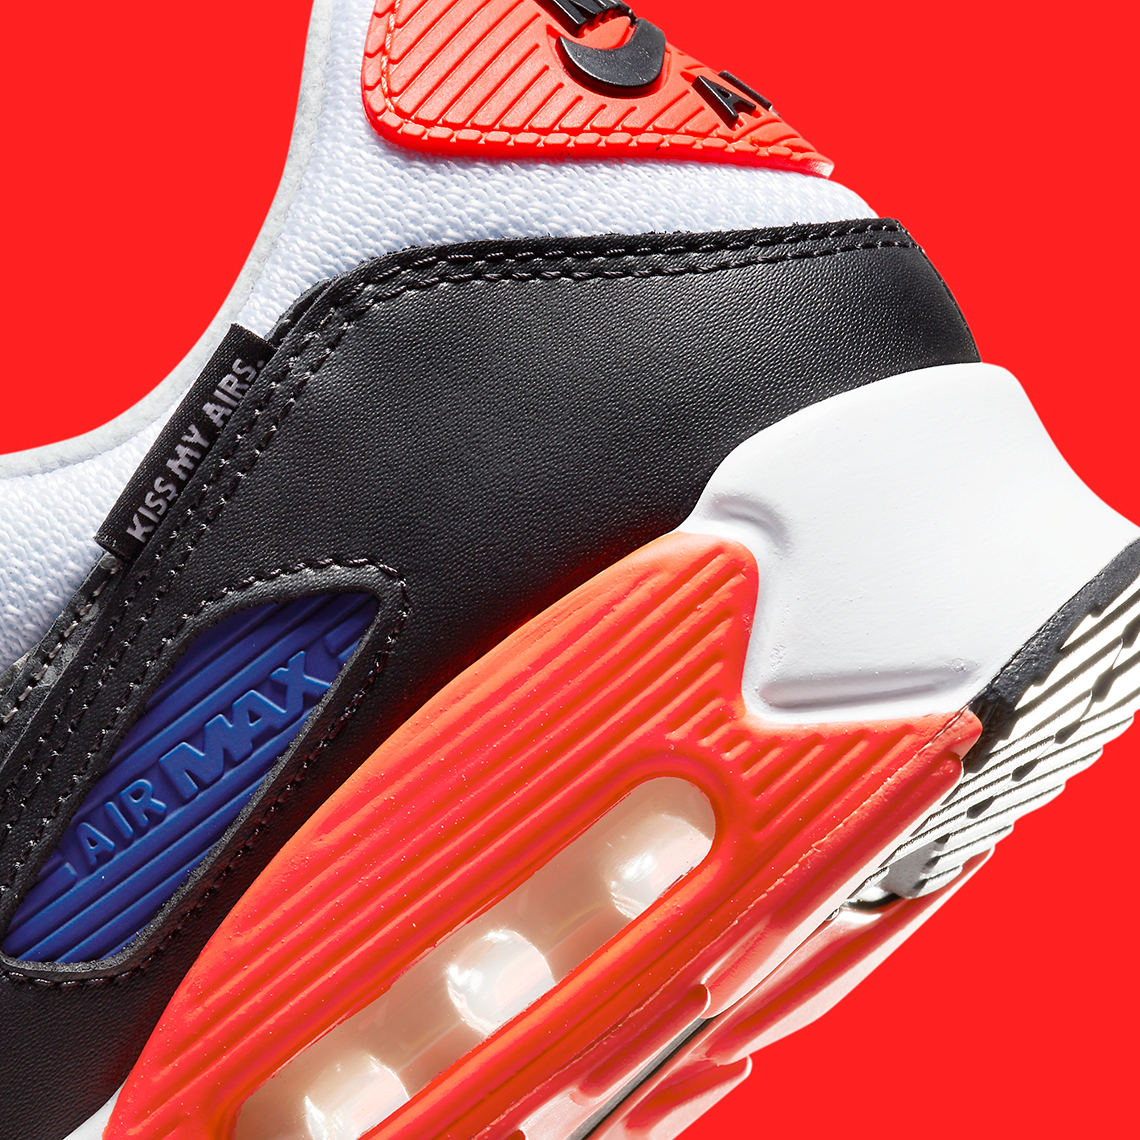 Safari Print And Infrared Hues Decorate The Nike Air Max 90 "Kiss My Airs"